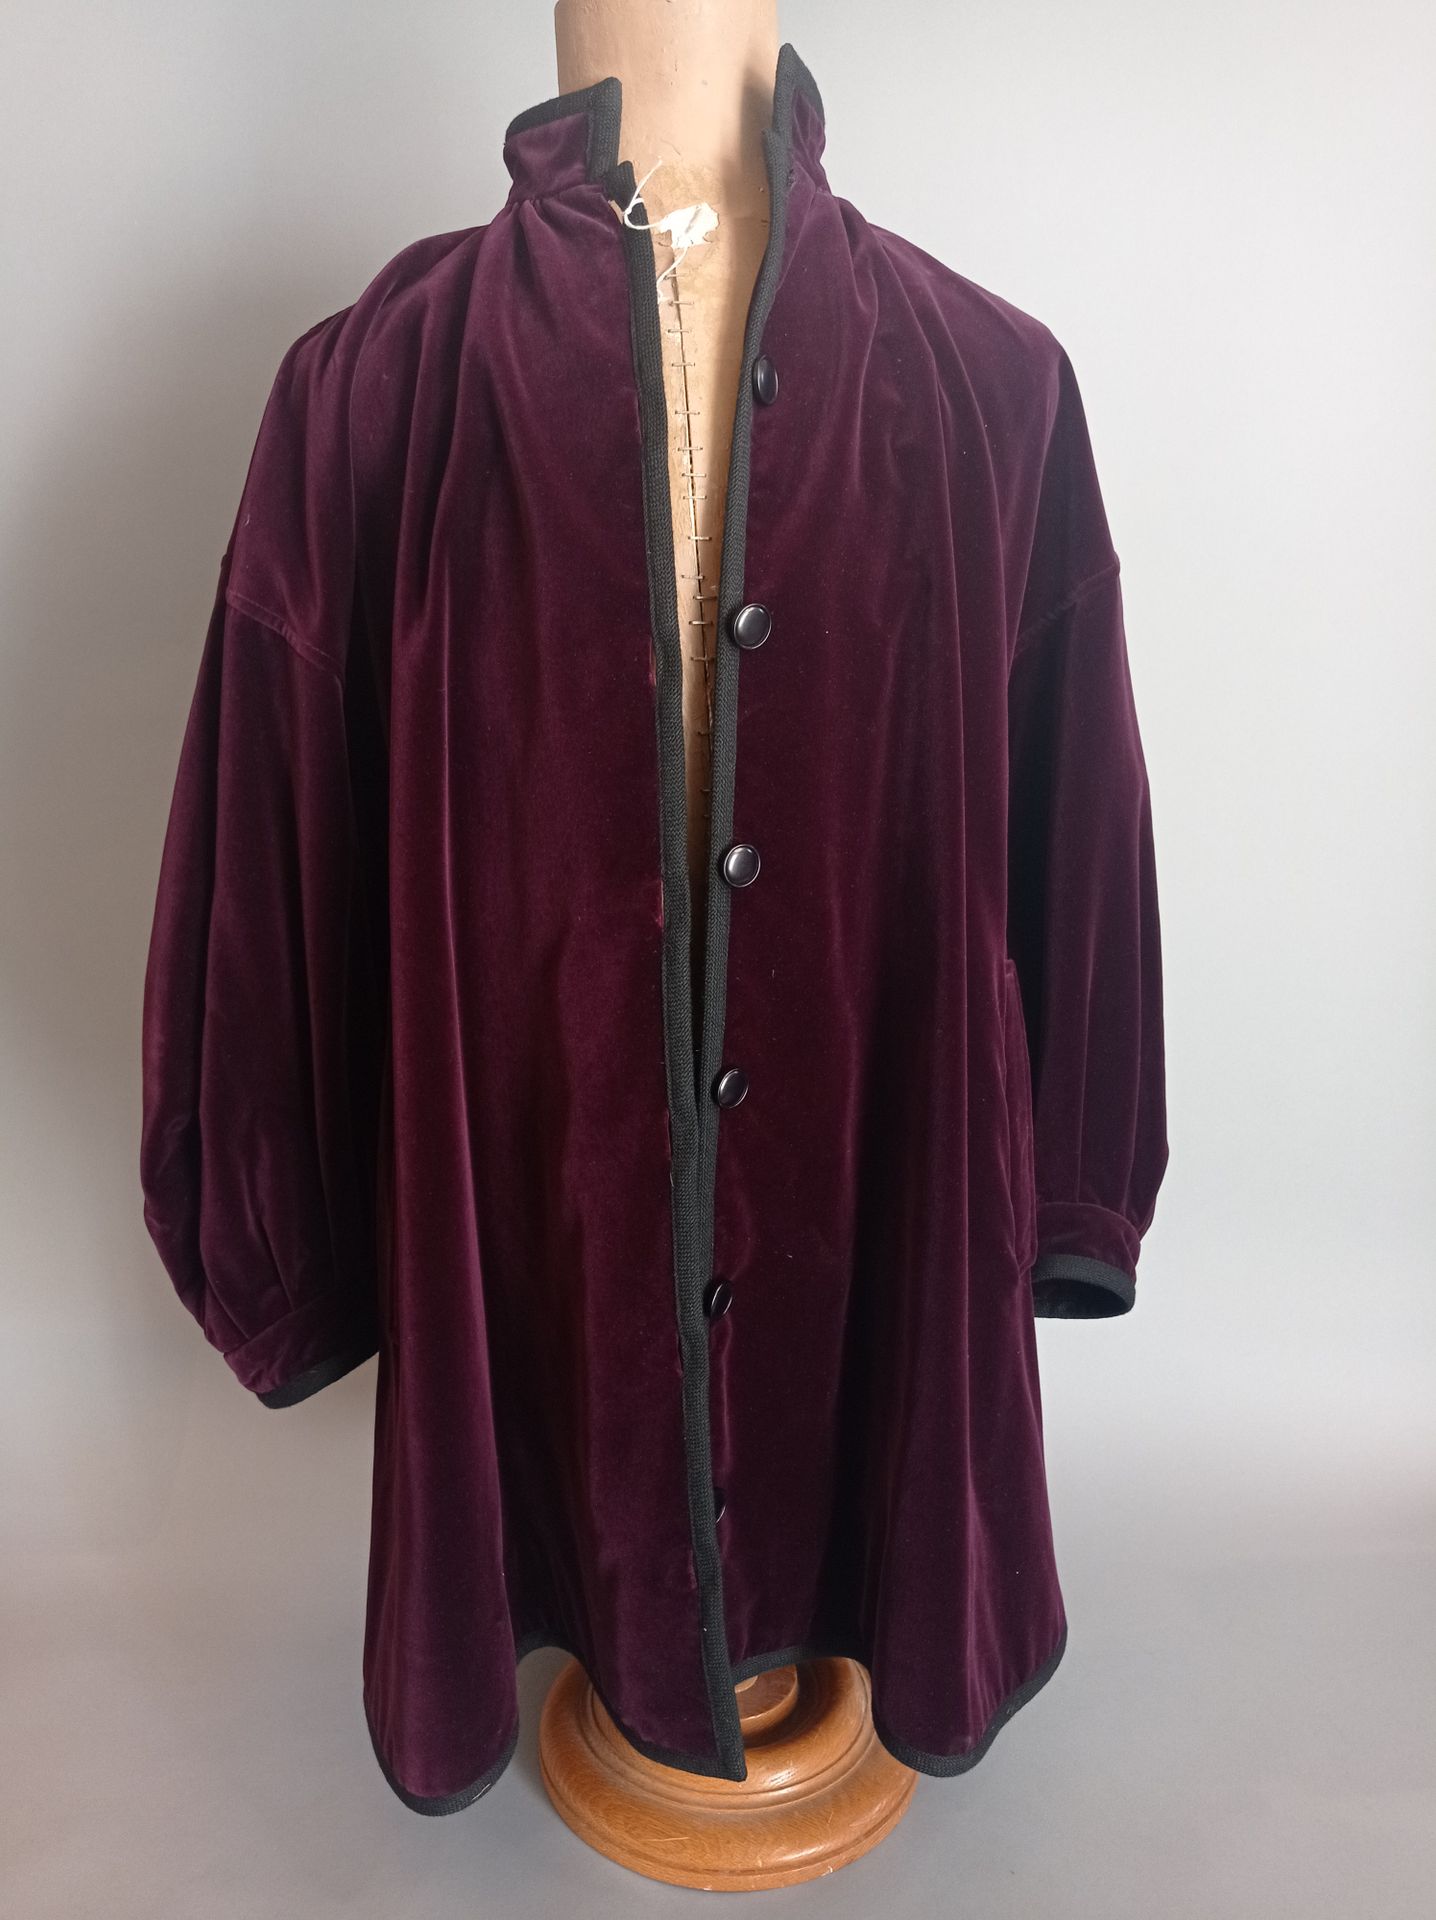 SAINT LAURENT Rive Gauche Purple velvet jacket
Size 38